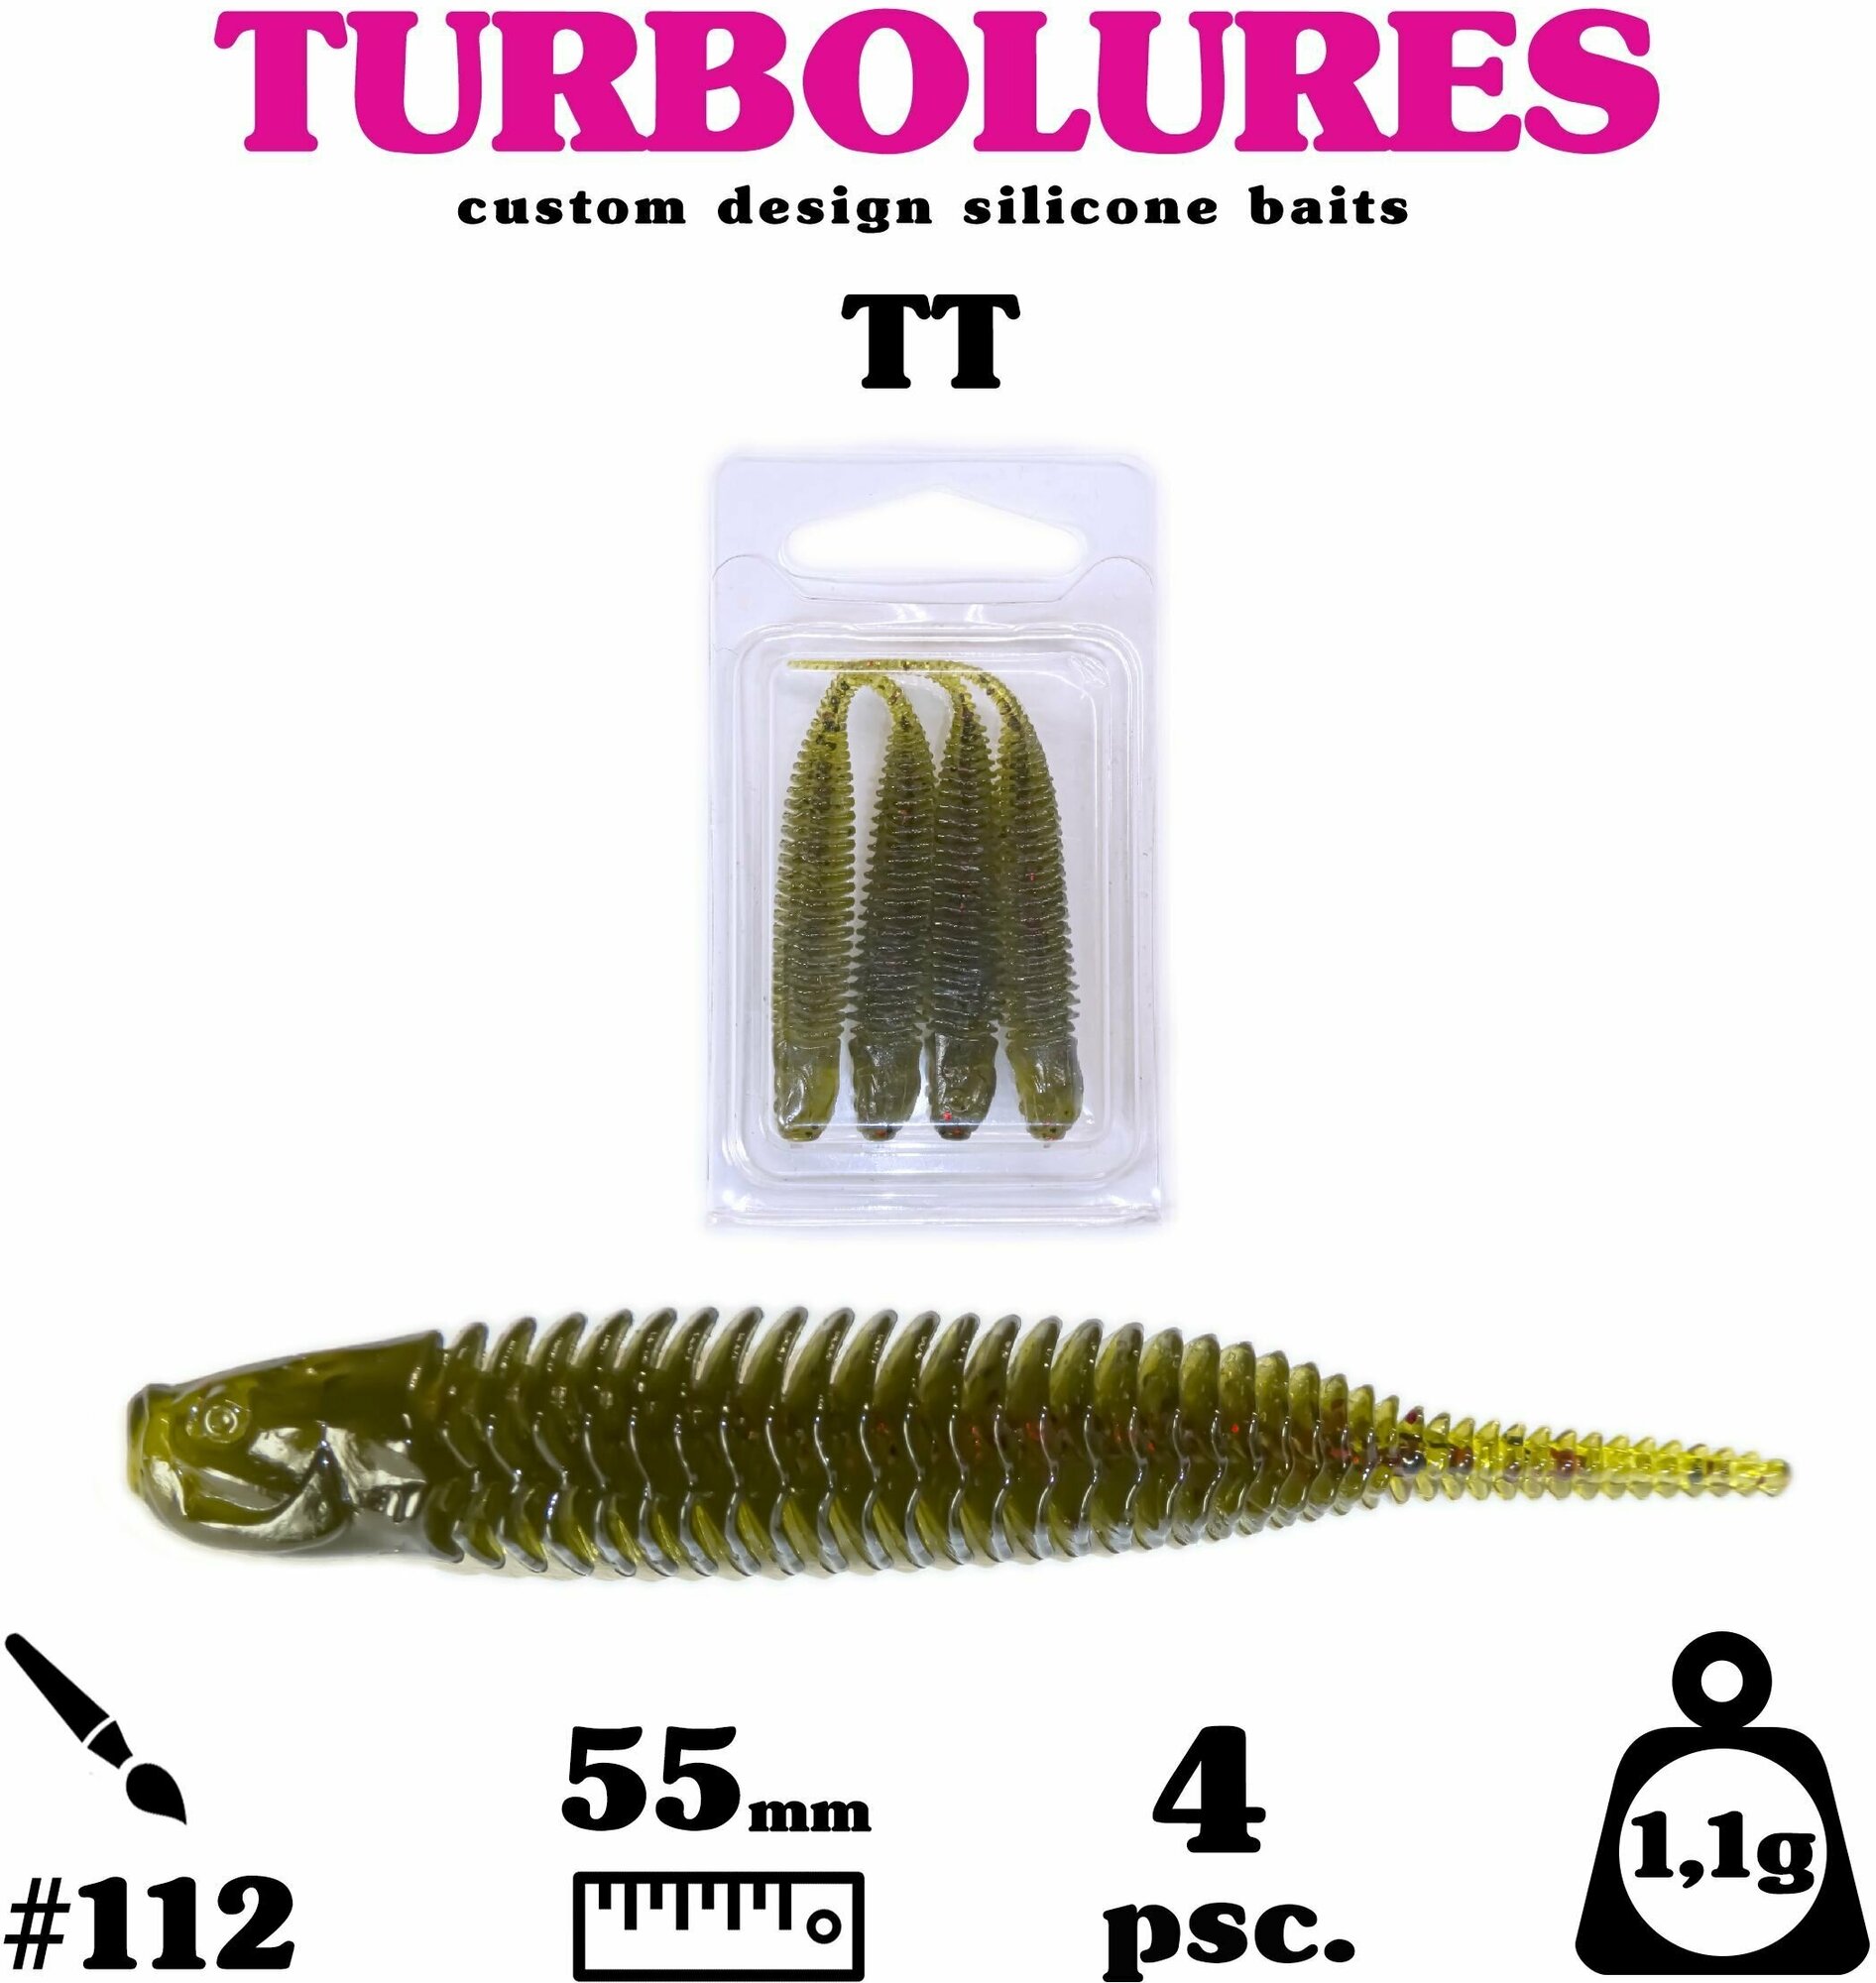 Мягкая приманка / силиконовая приманка / рыболовный набор / Turbolures Турболюрес / TT #112 55 мм 1,1 гр слаг 4 шт.